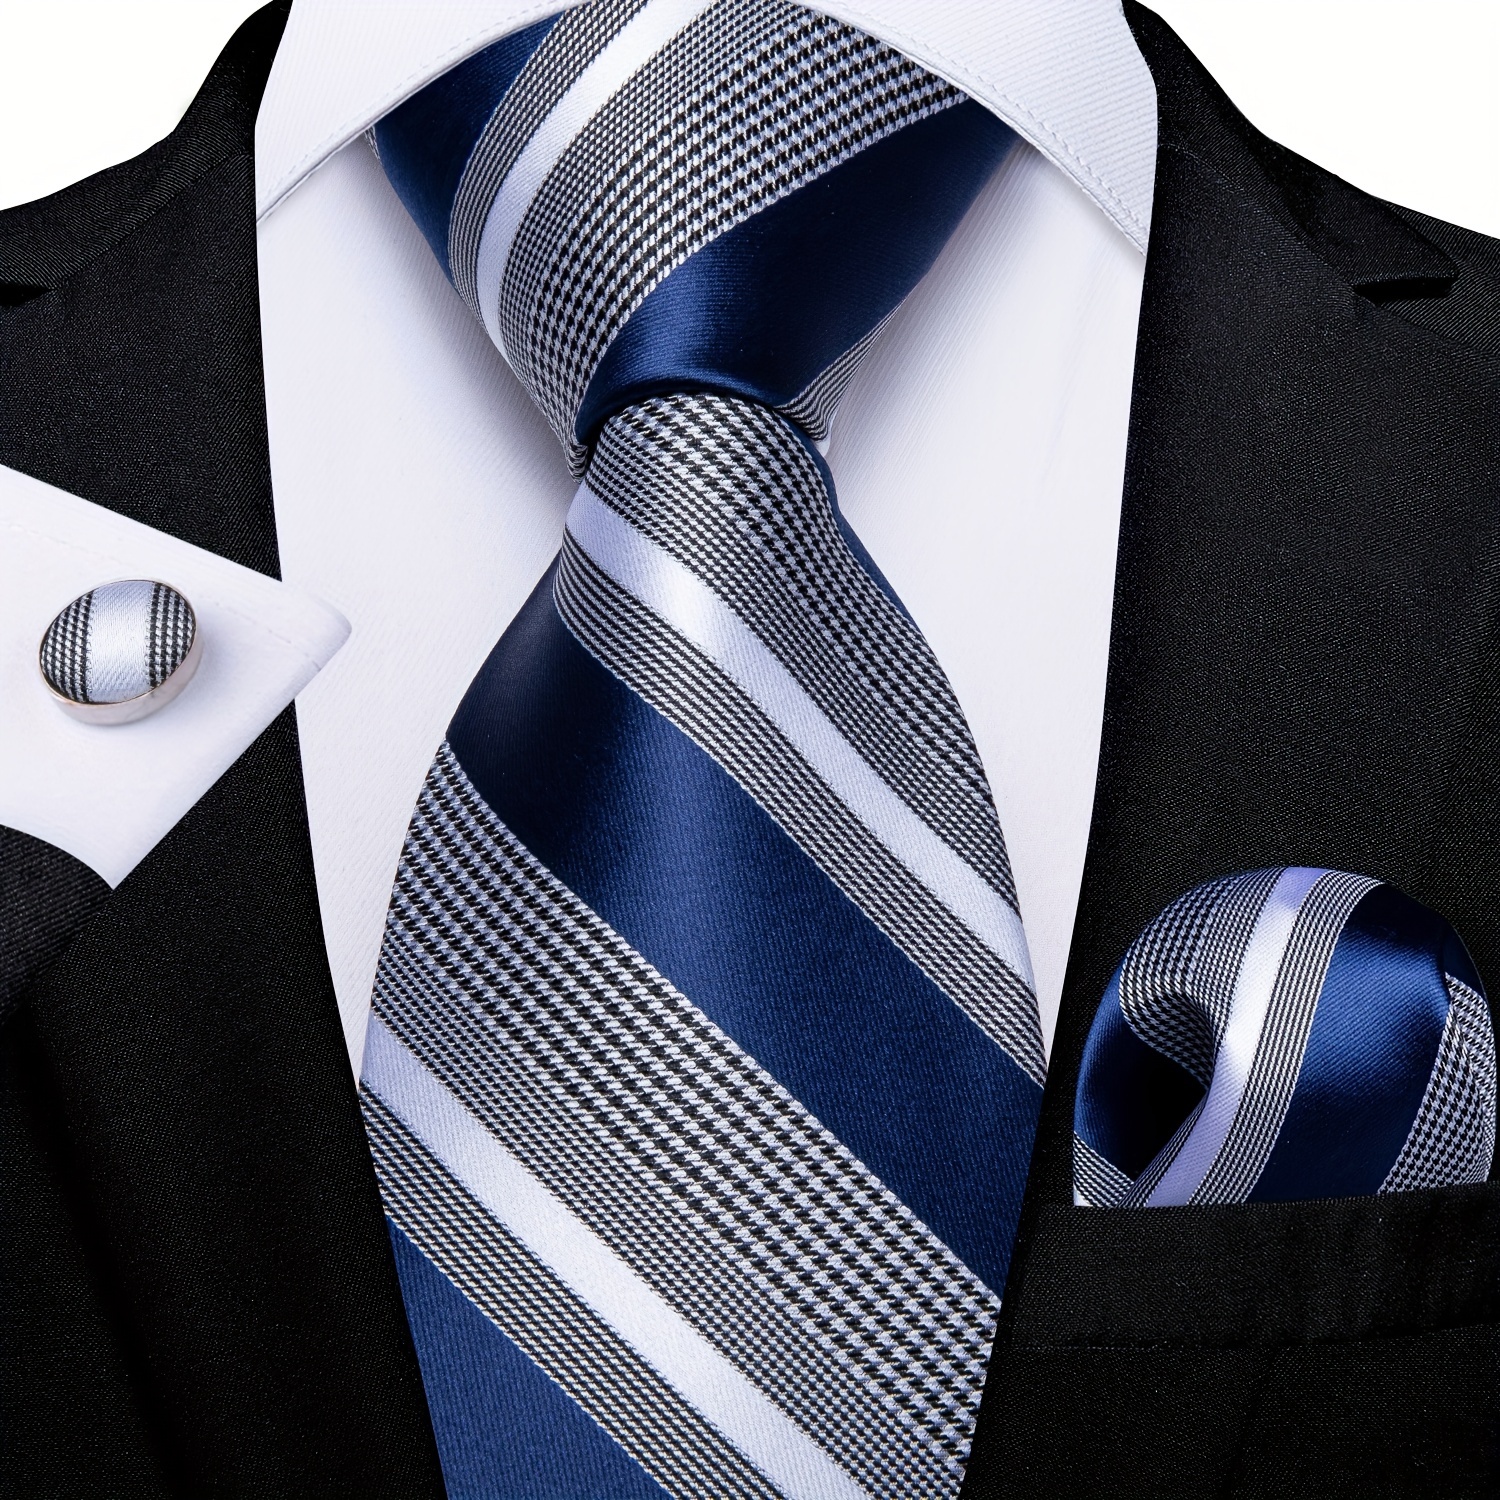 Men's Ties, Buy Men's Business & Wedding Ties